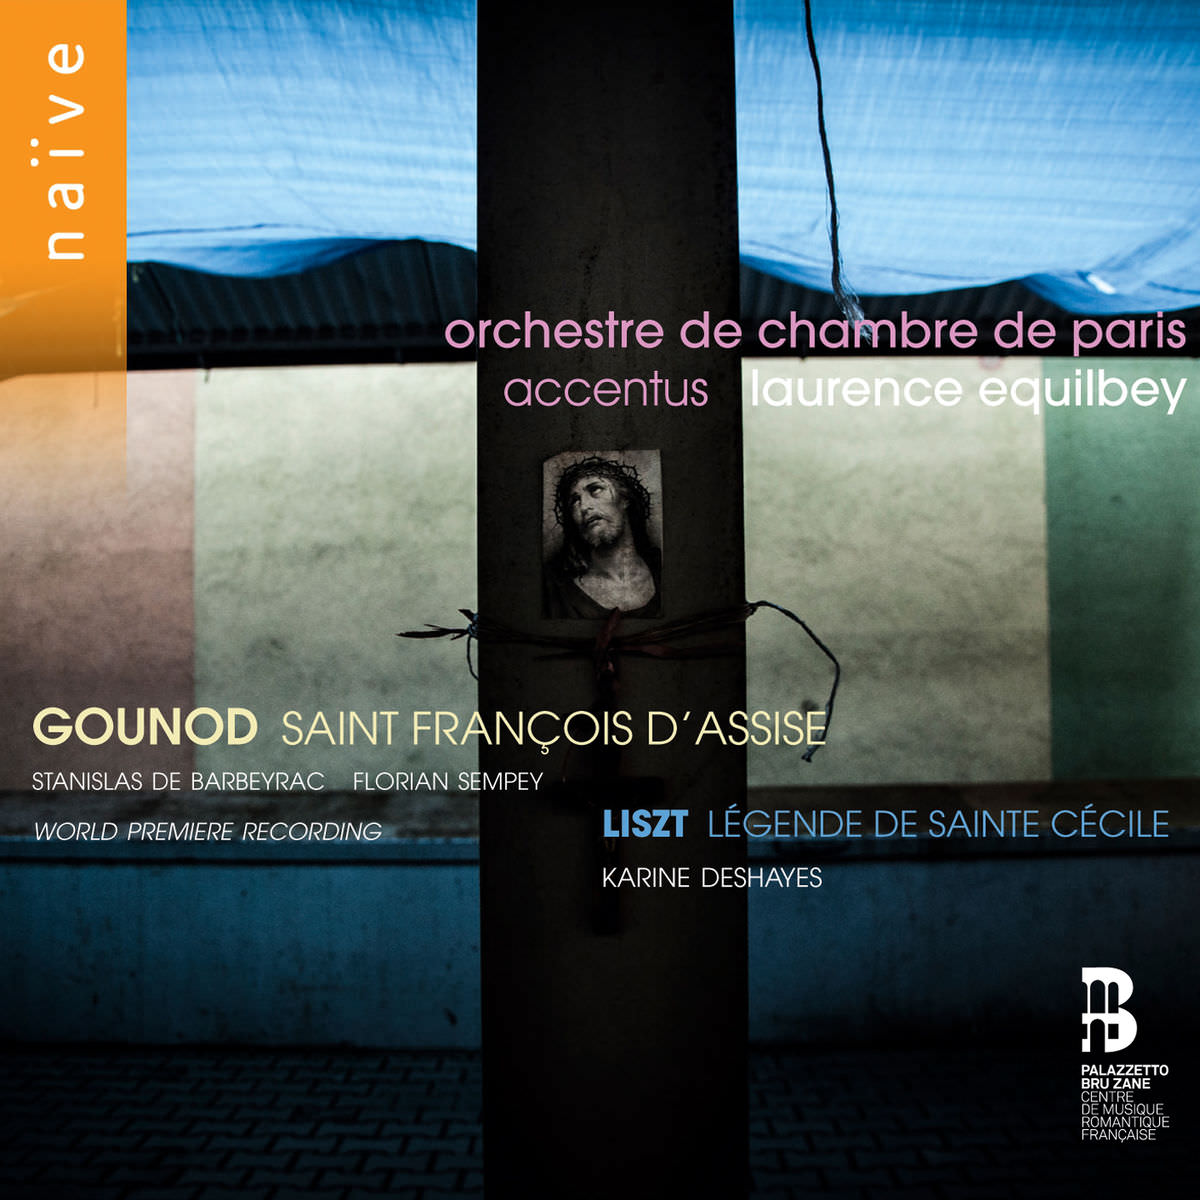 Accentus, Laurence Equilbey – Gounod: Saint Francois d’Assise; Liszt: Legende de Sainte Cecile (2018) [FLAC 24bit/48kHz]